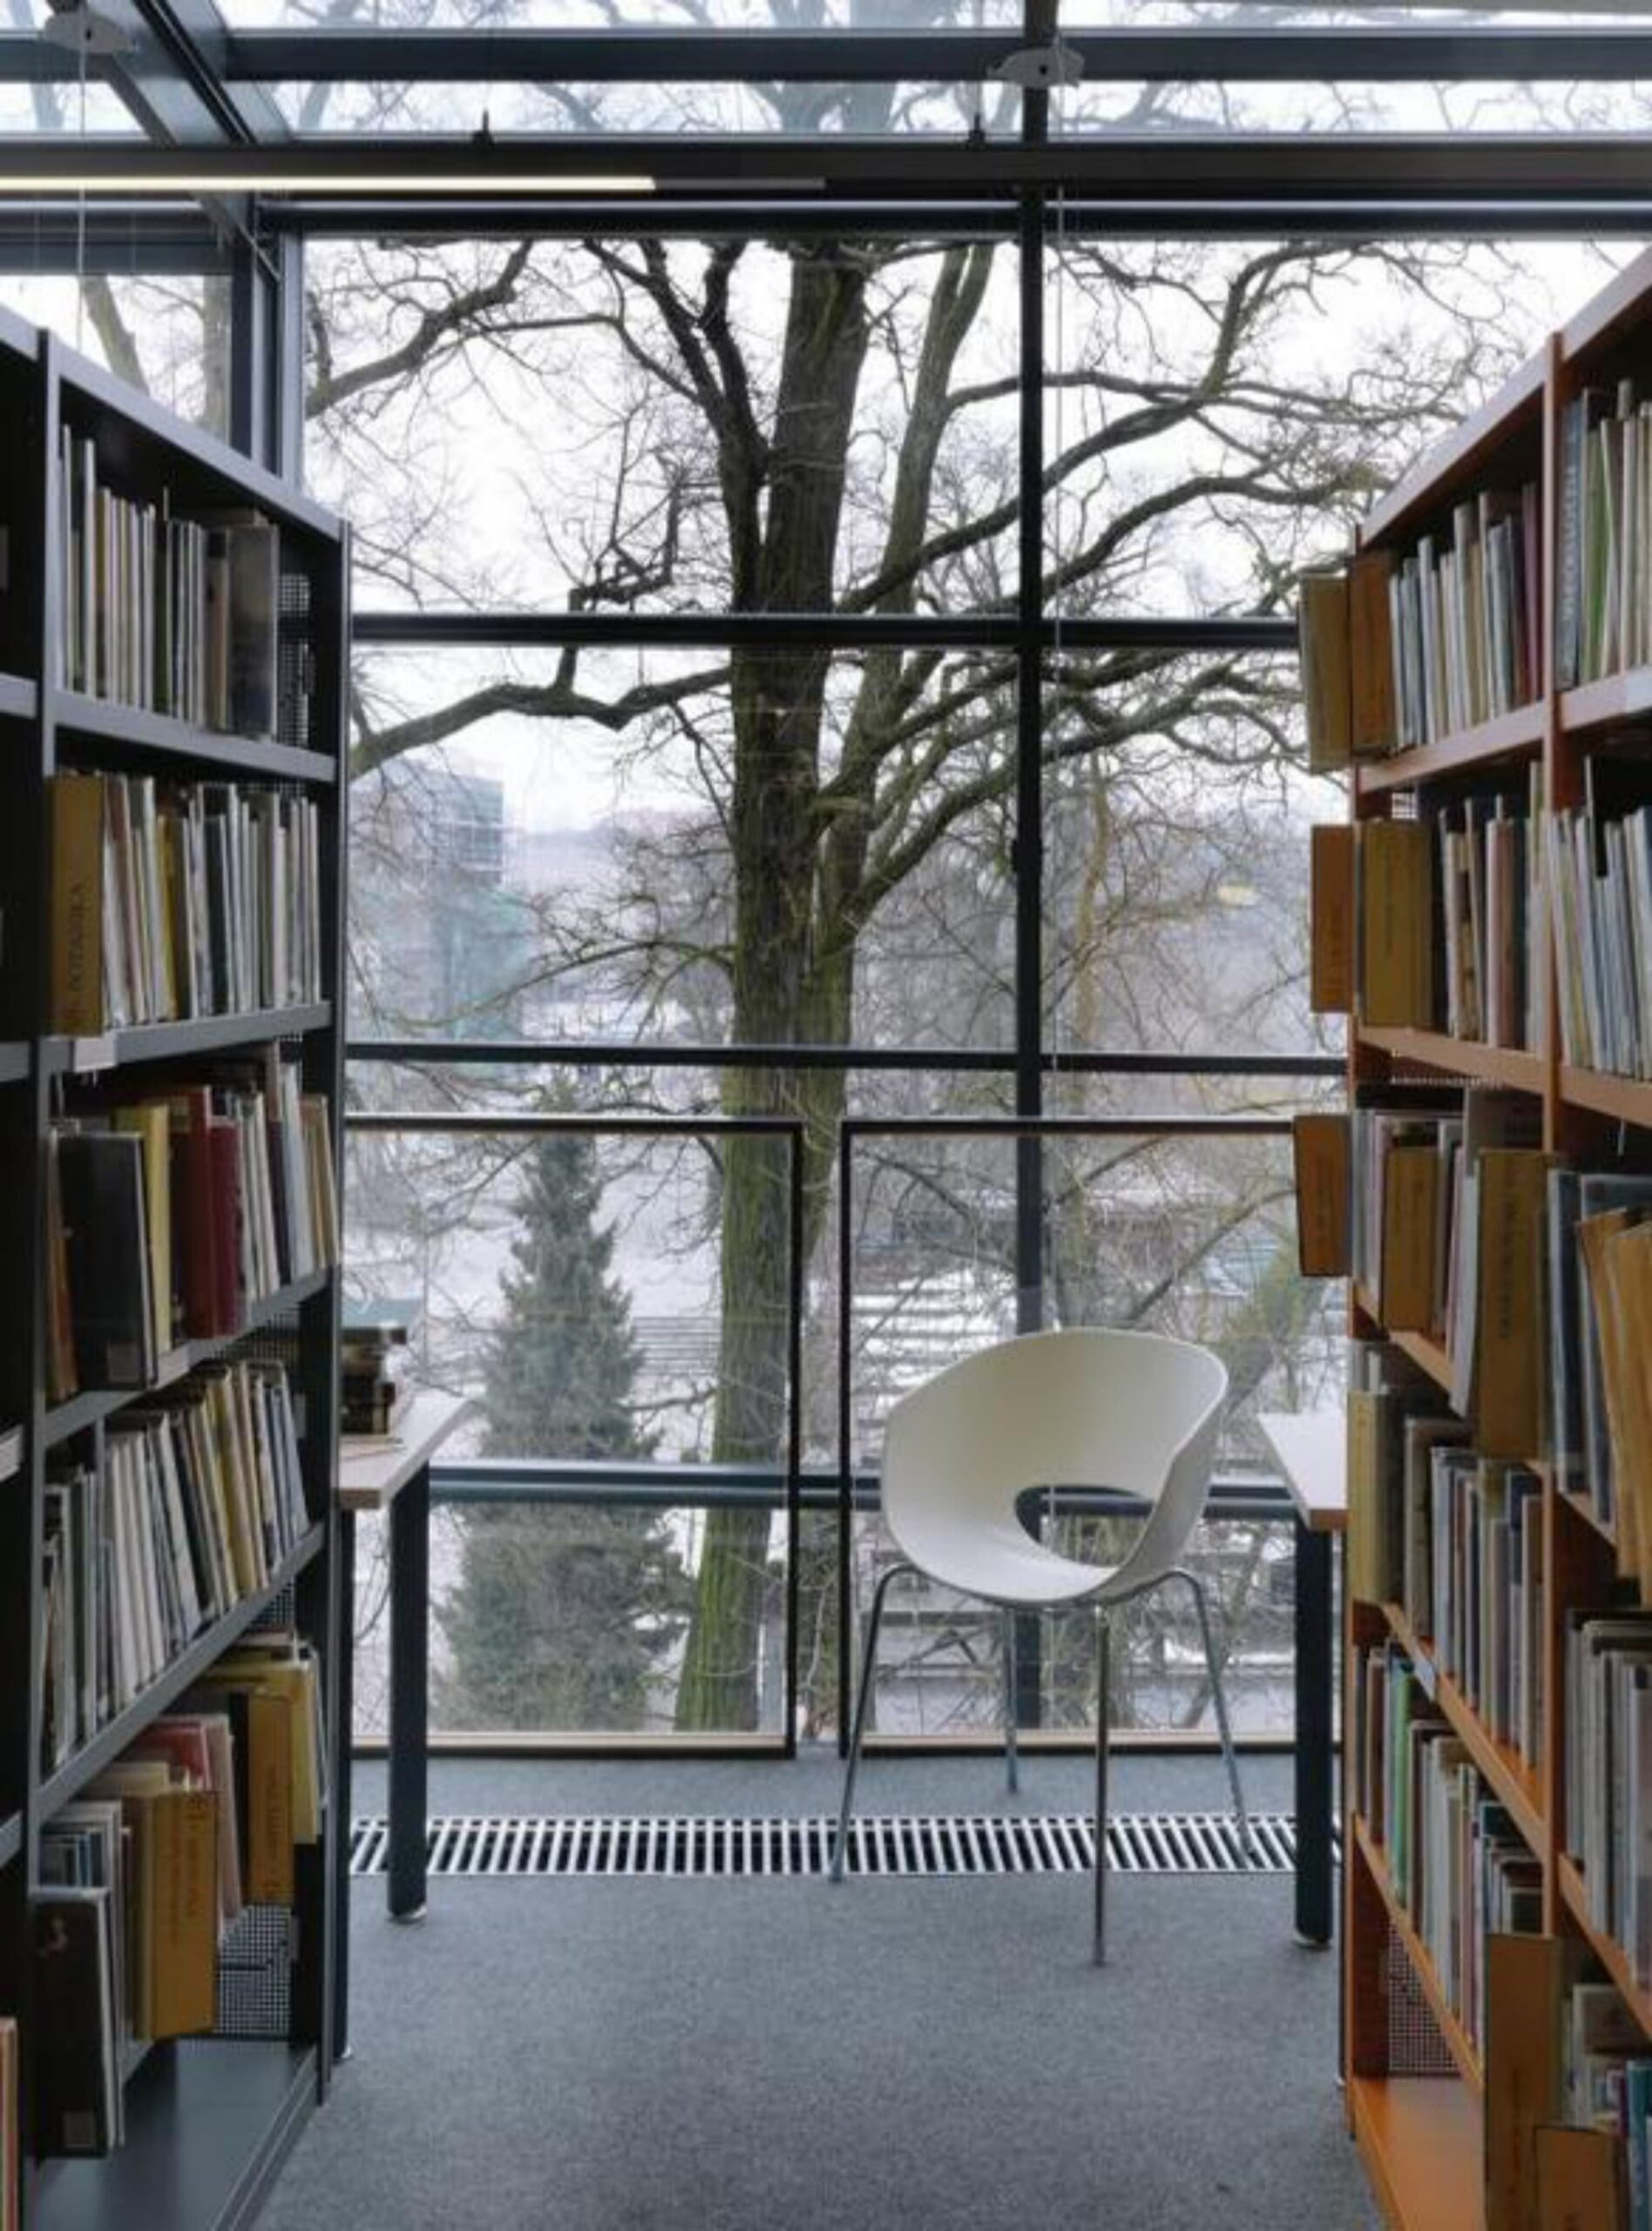 Miejska Biblioteka Publiczna w Opolu